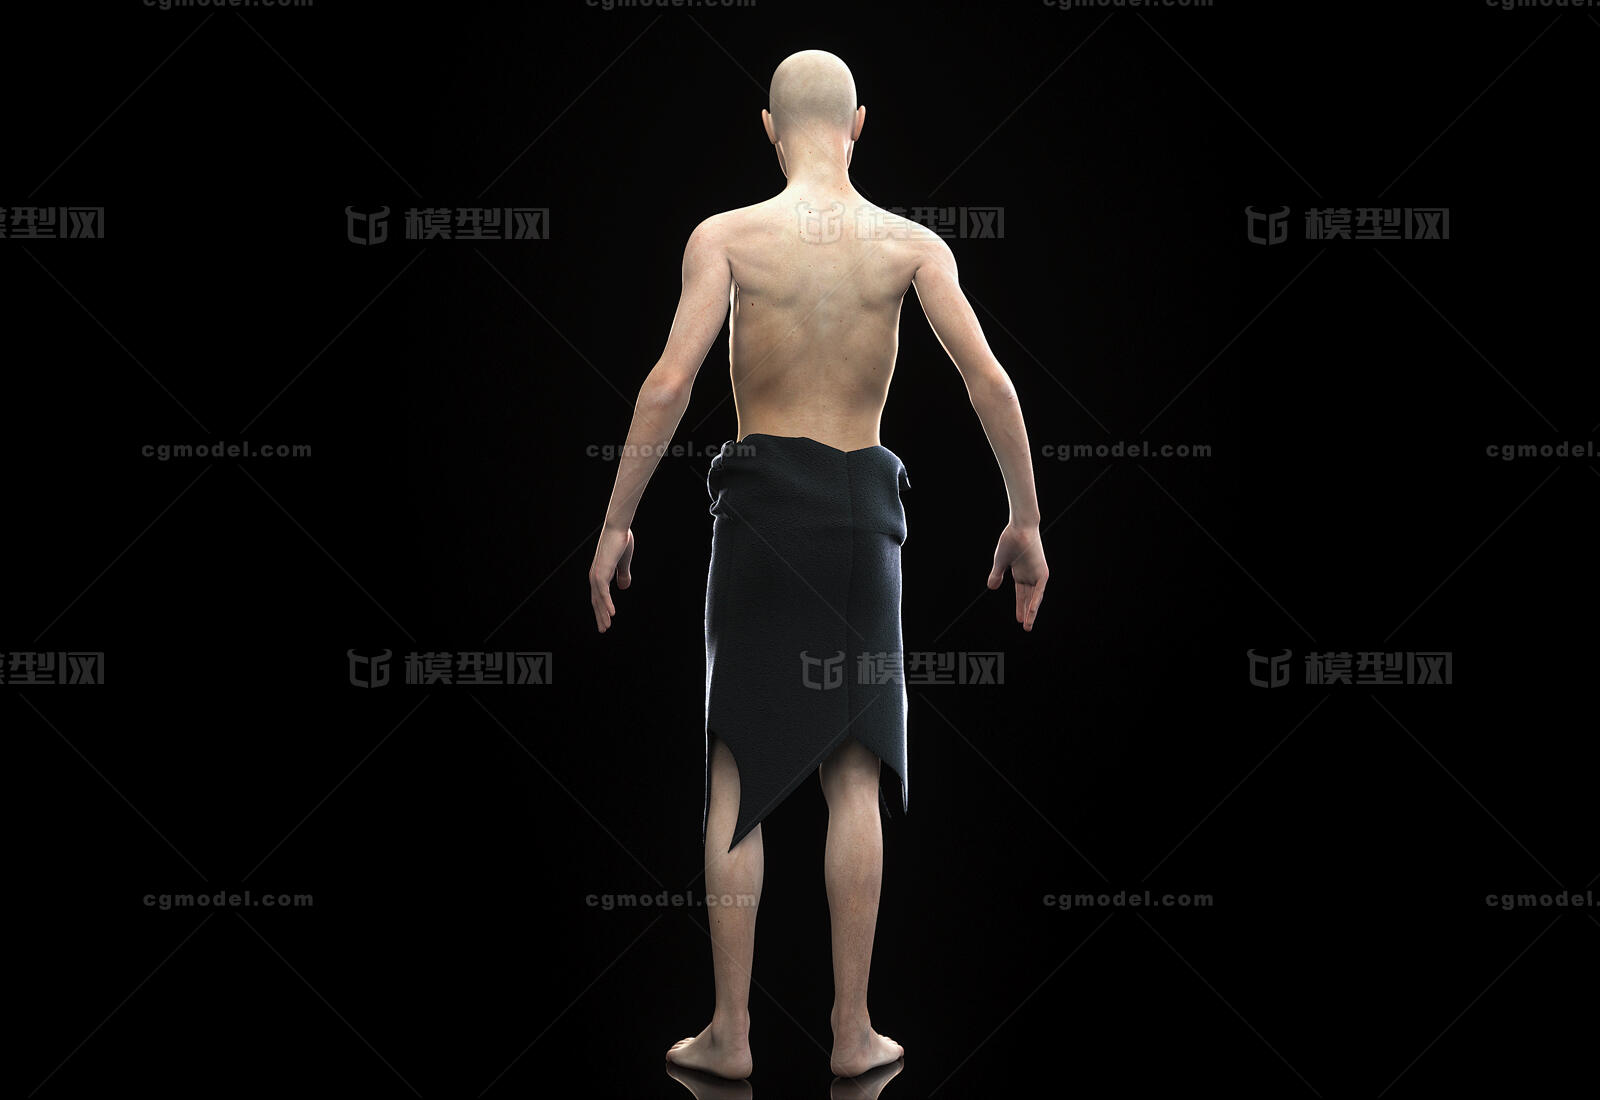 黑色背景中裸体躯干上非常肌肉的帅气男人 库存照片. 图片 包括有 裸体, 纵向, 一个, 男人, 全能 - 210925820